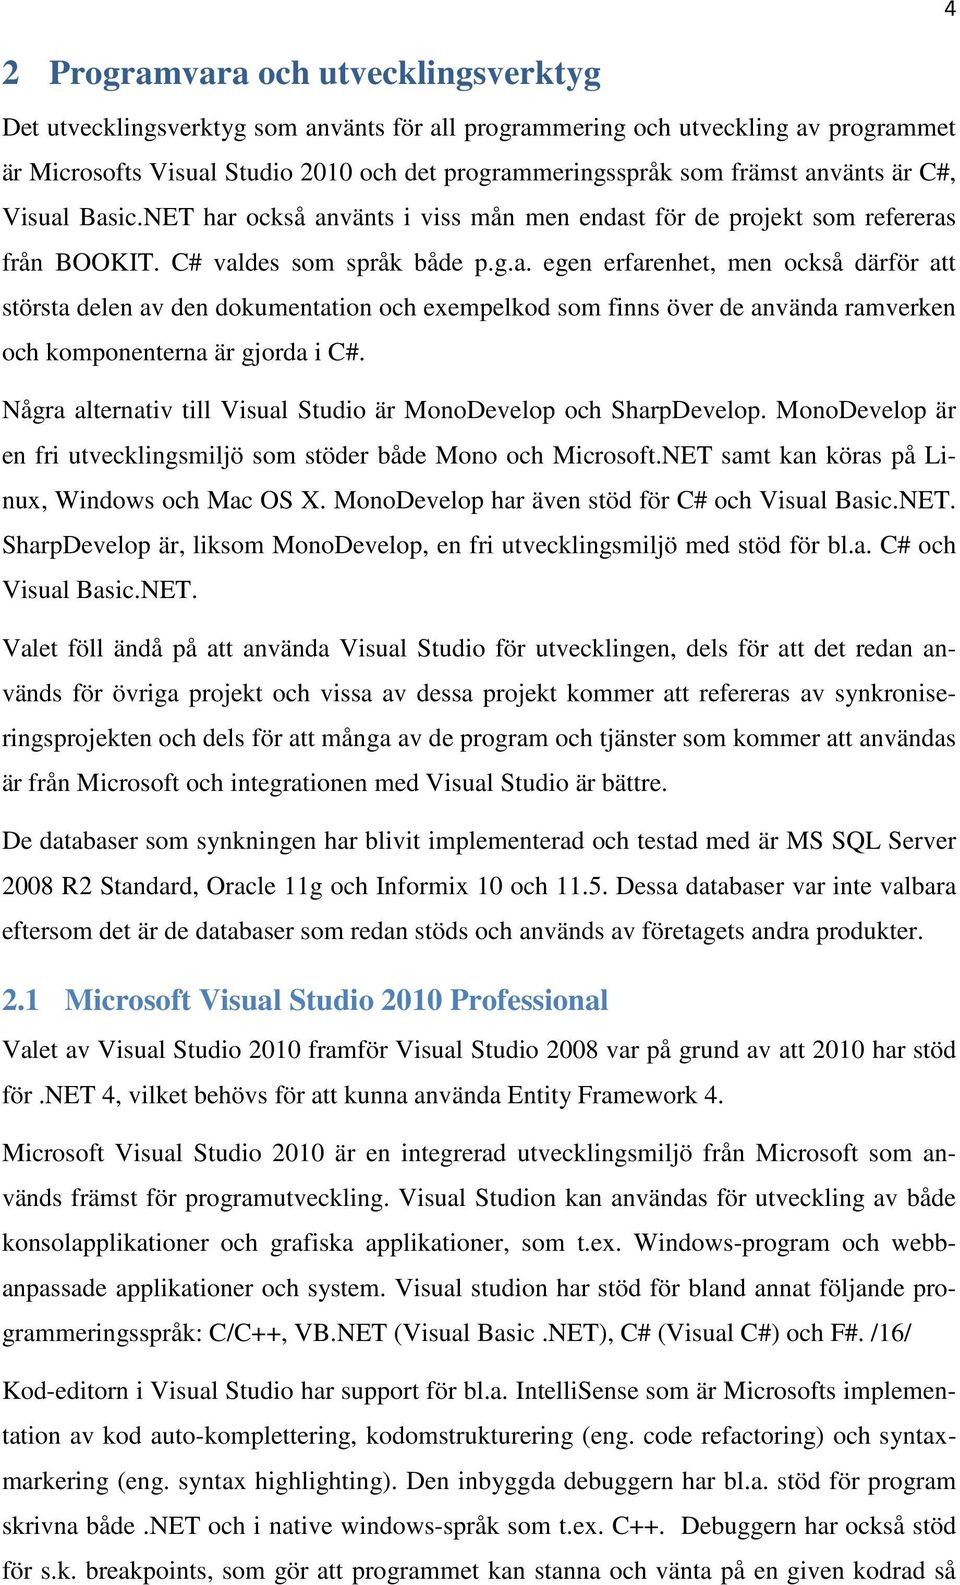 Några alternativ till Visual Studio är MonoDevelop och SharpDevelop. MonoDevelop är en fri utvecklingsmiljö som stöder både Mono och Microsoft.NET samt kan köras på Linux, Windows och Mac OS X.